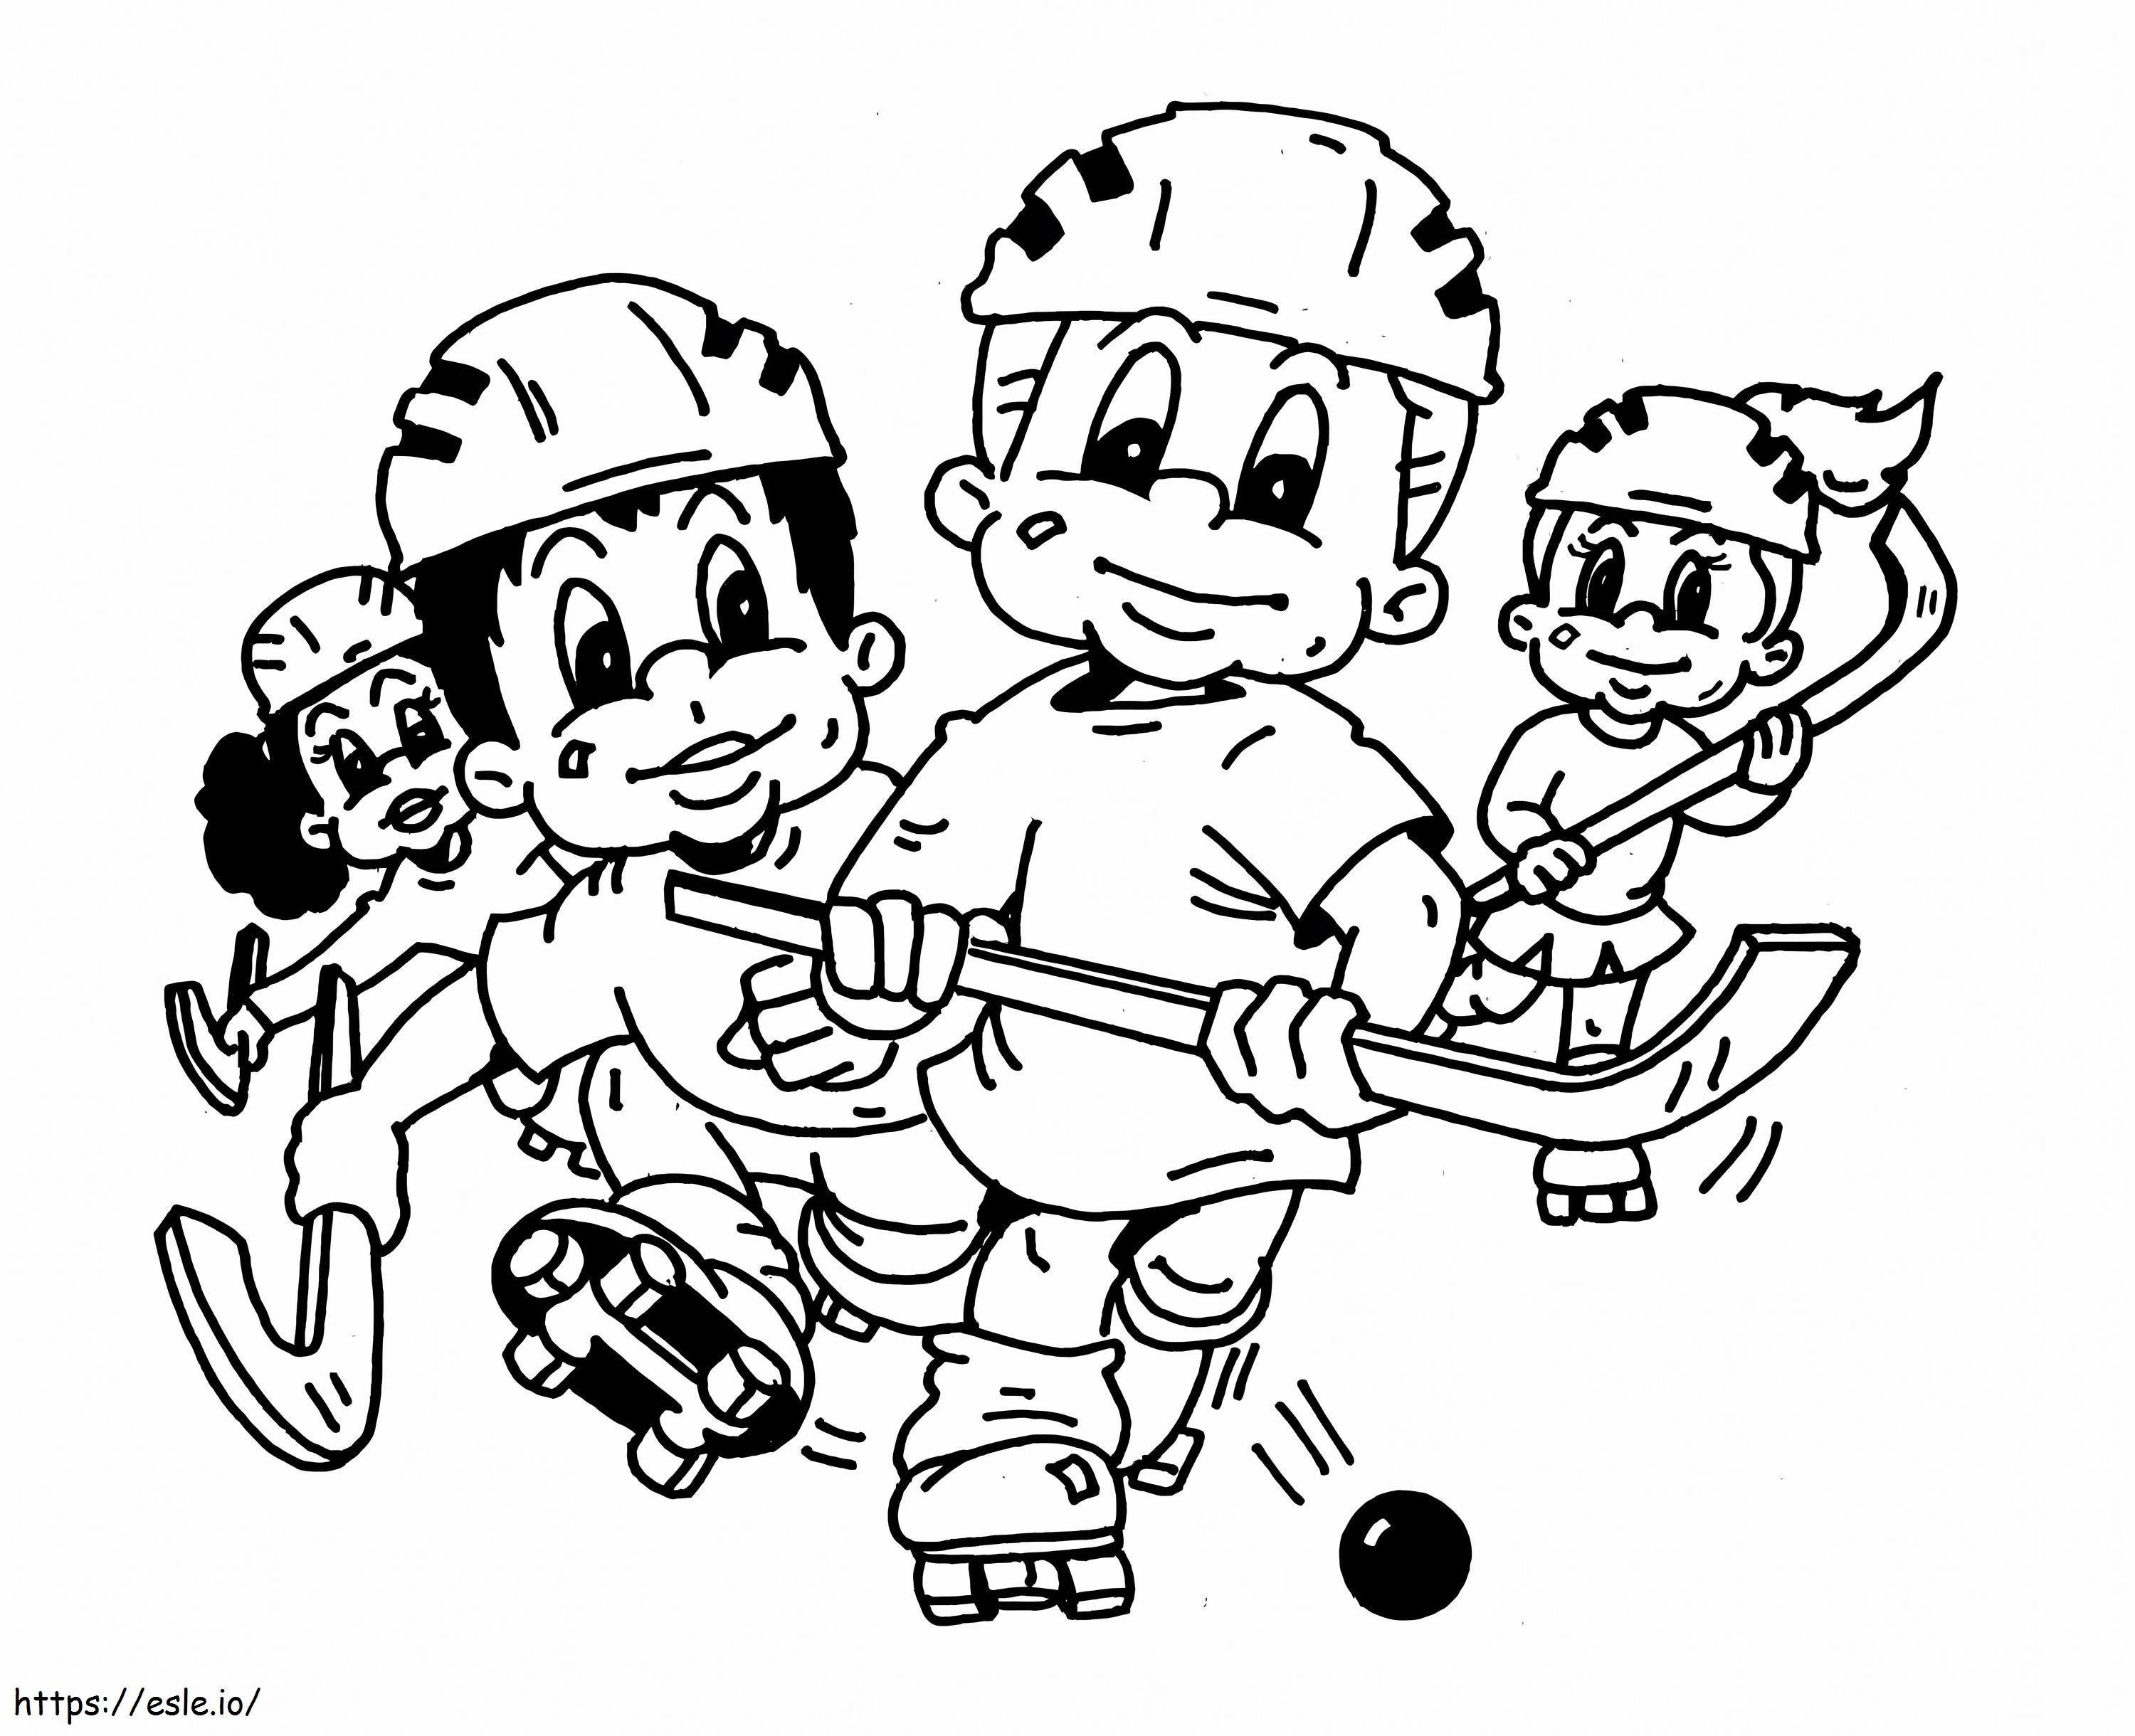 Patru copii care joacă hochei de colorat